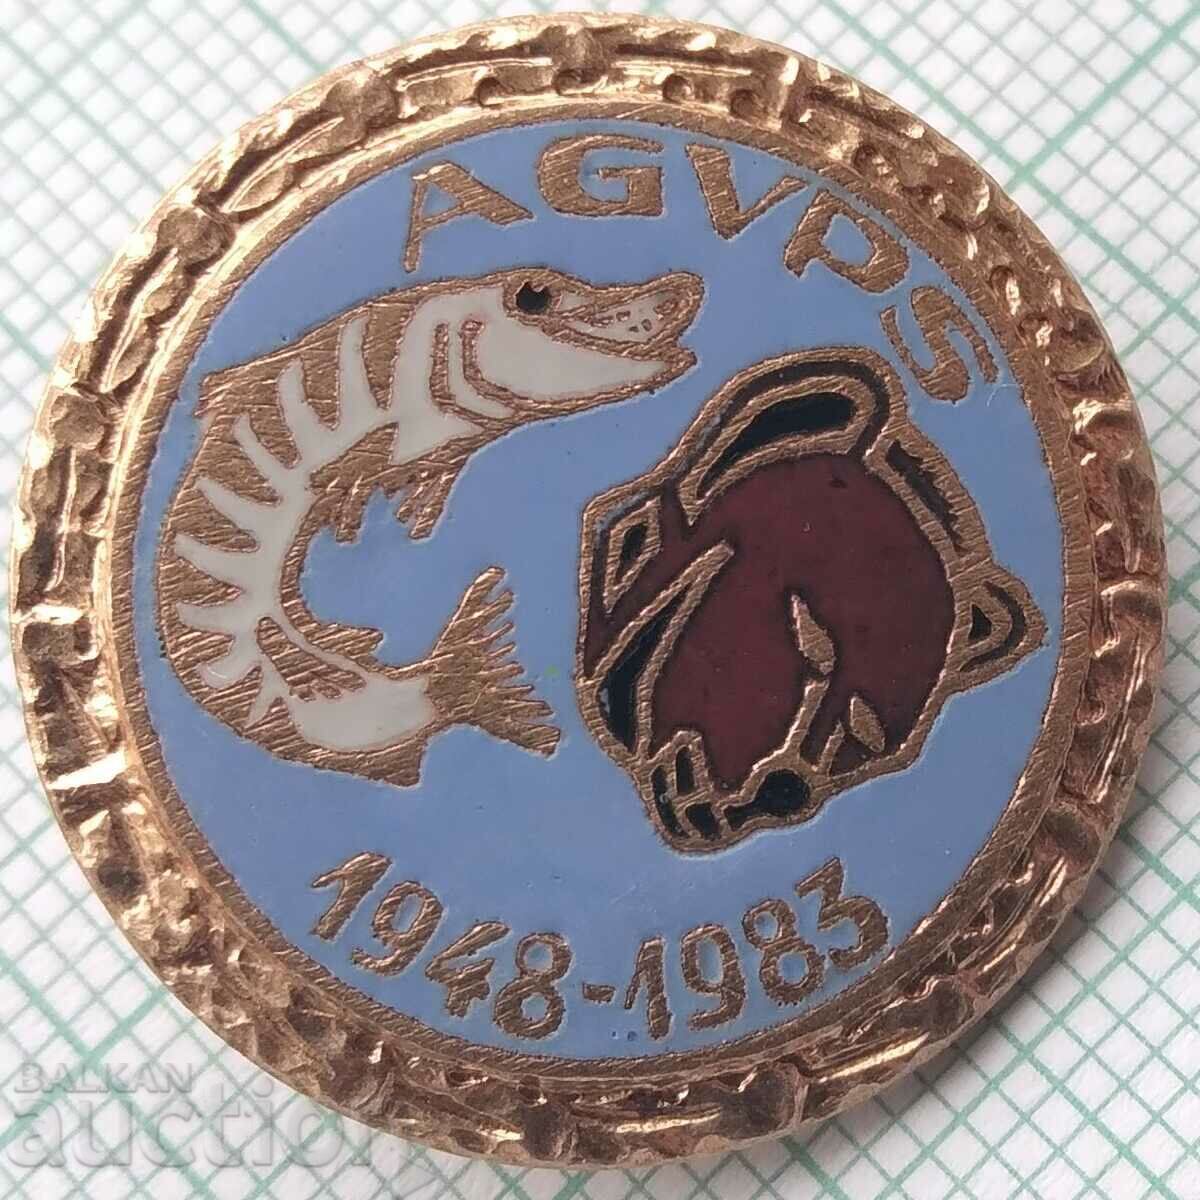 15734 Badge - Hunting Fishing Union Romania 1983 - enamel